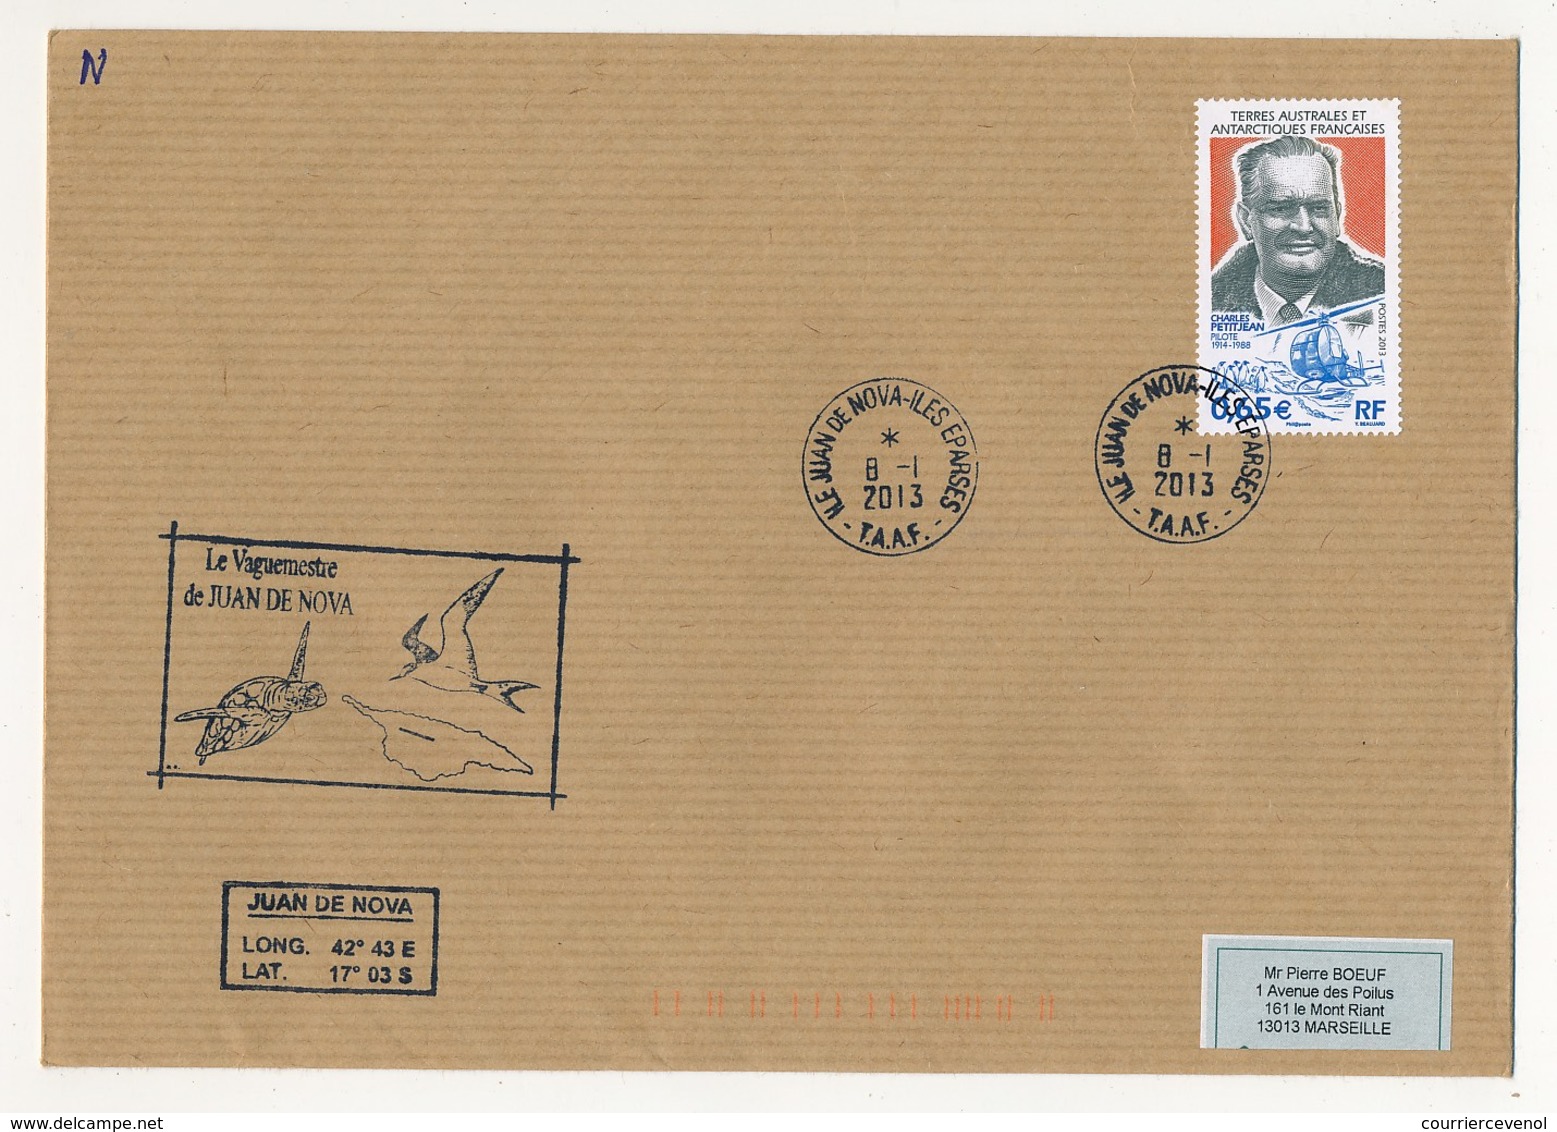 TAAF - Enveloppe Affr. 0,65E Charles Petitjean - Ile Juan De Nova - Iles Eparses 8-1-2013 + Cachet Vaguemestre - Lettres & Documents